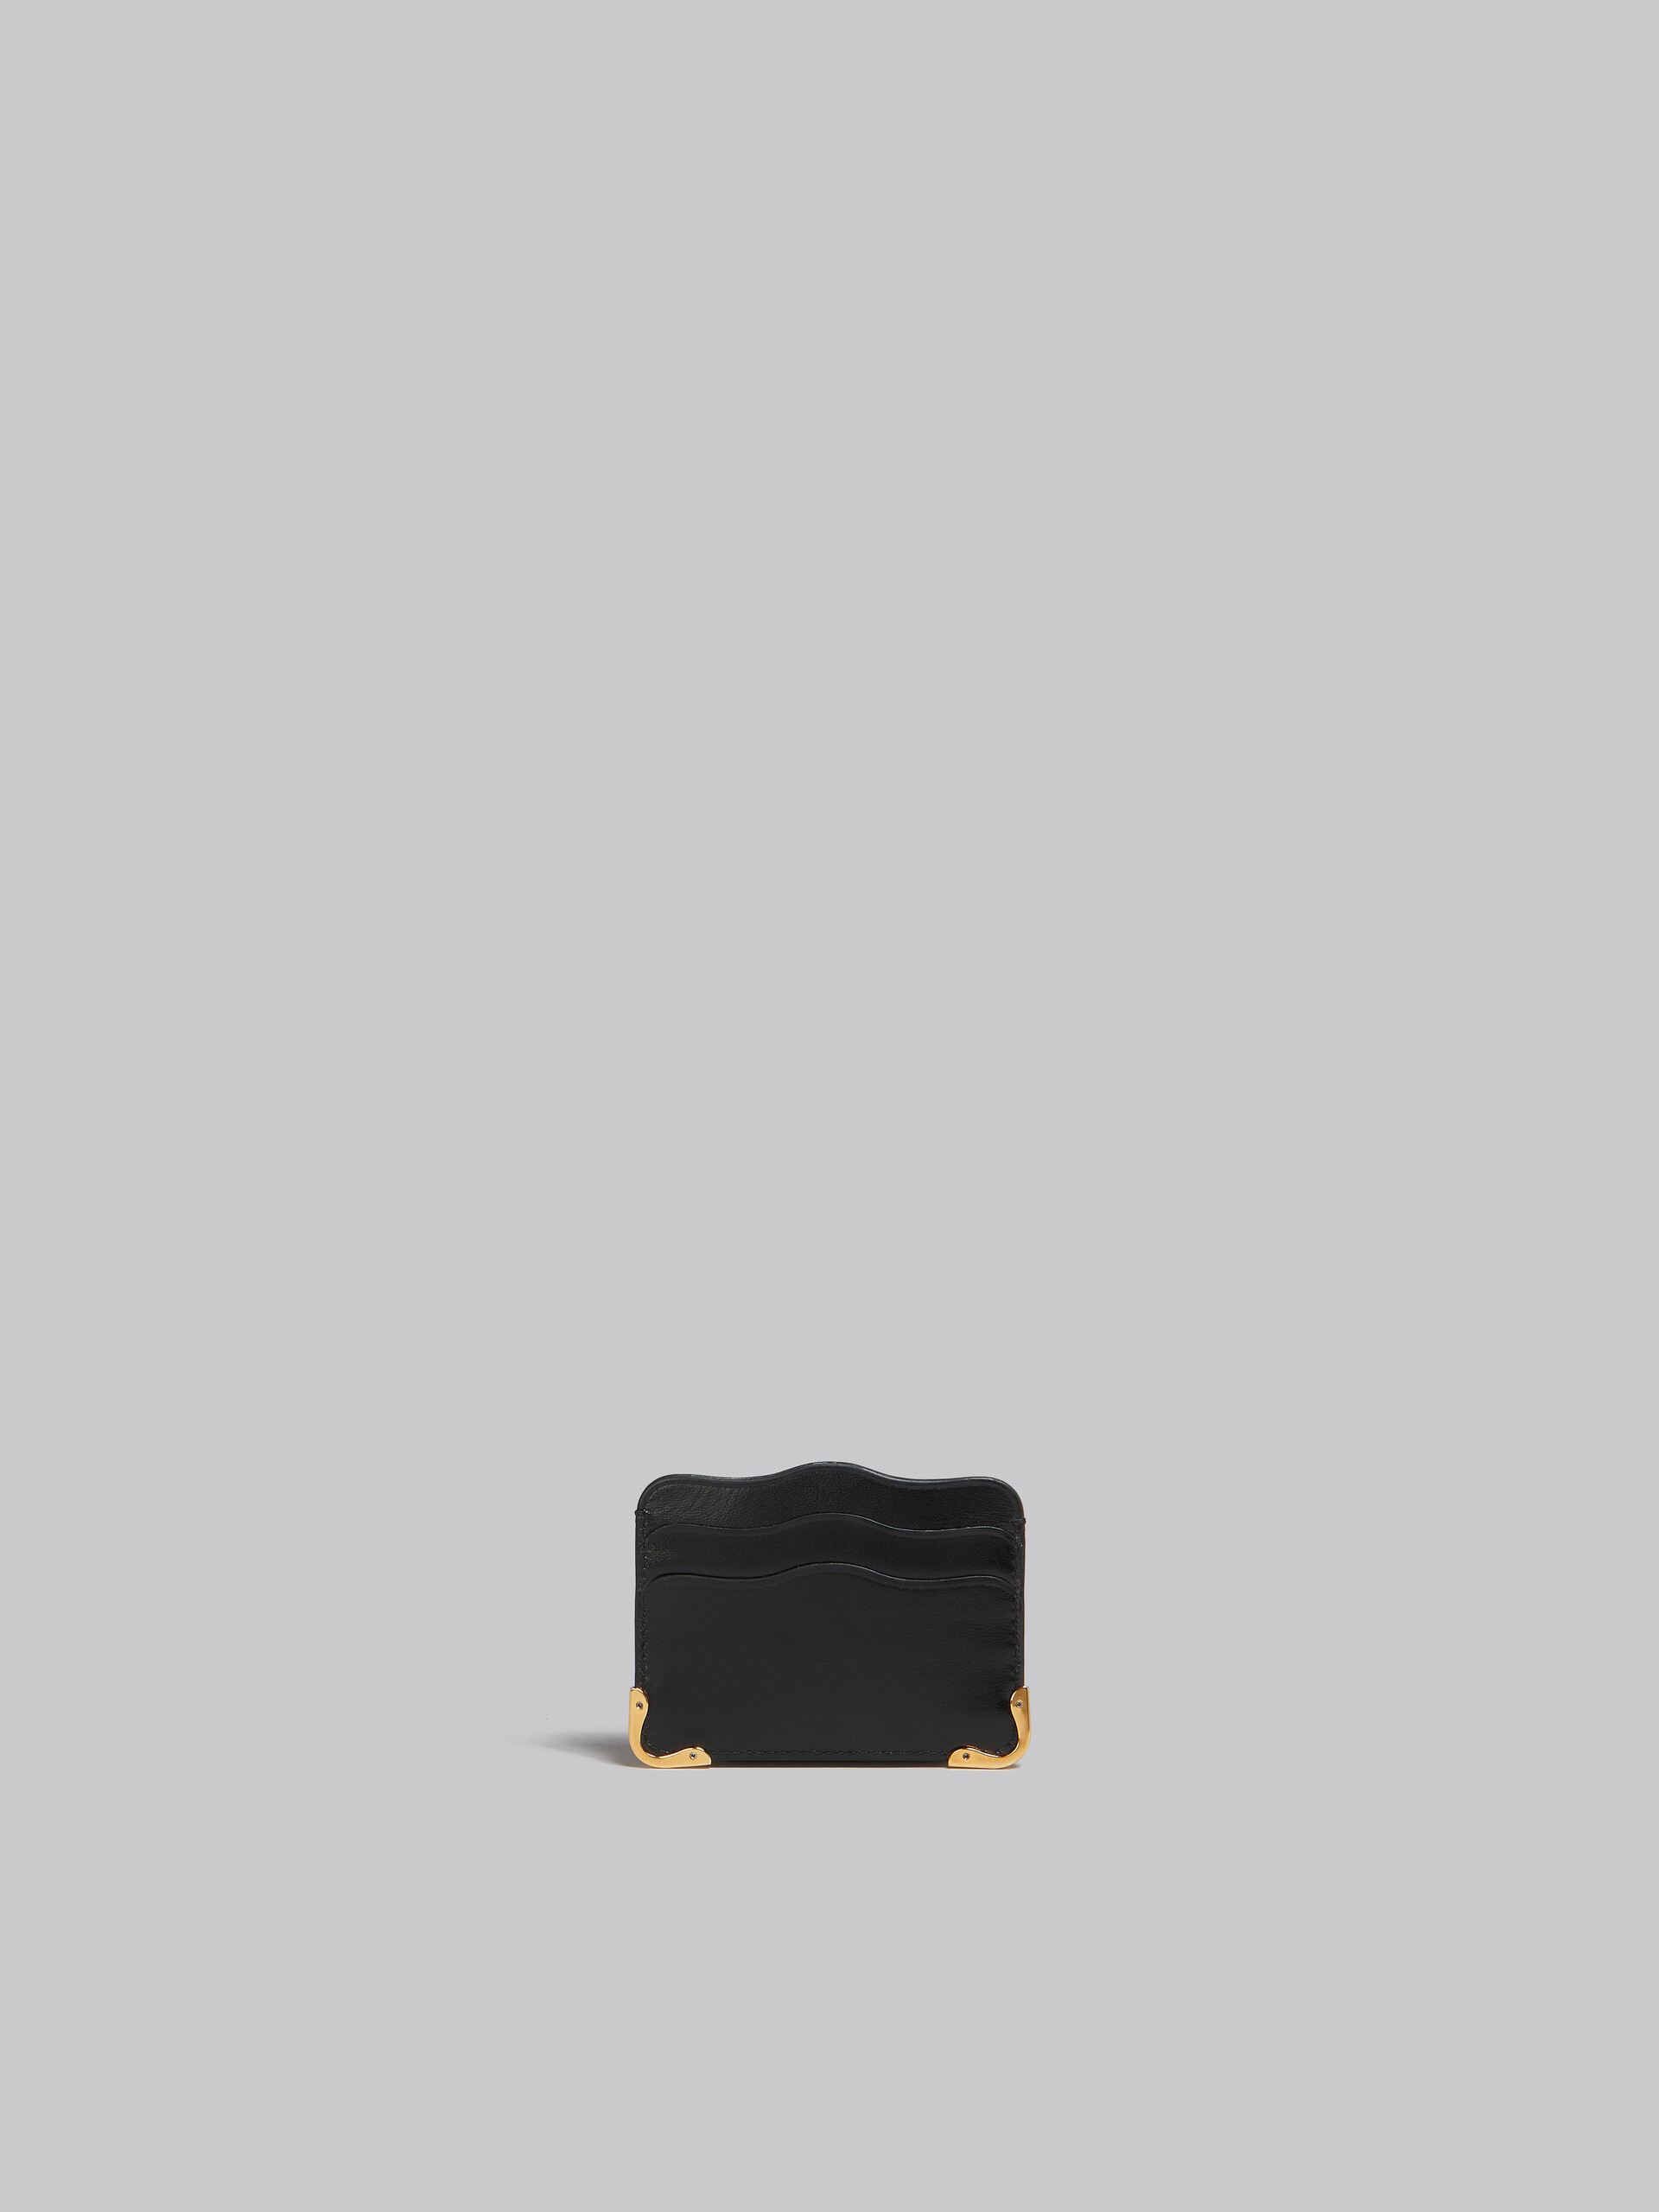 Portacarte ondulato in pelle nera - Portafogli - Image 3